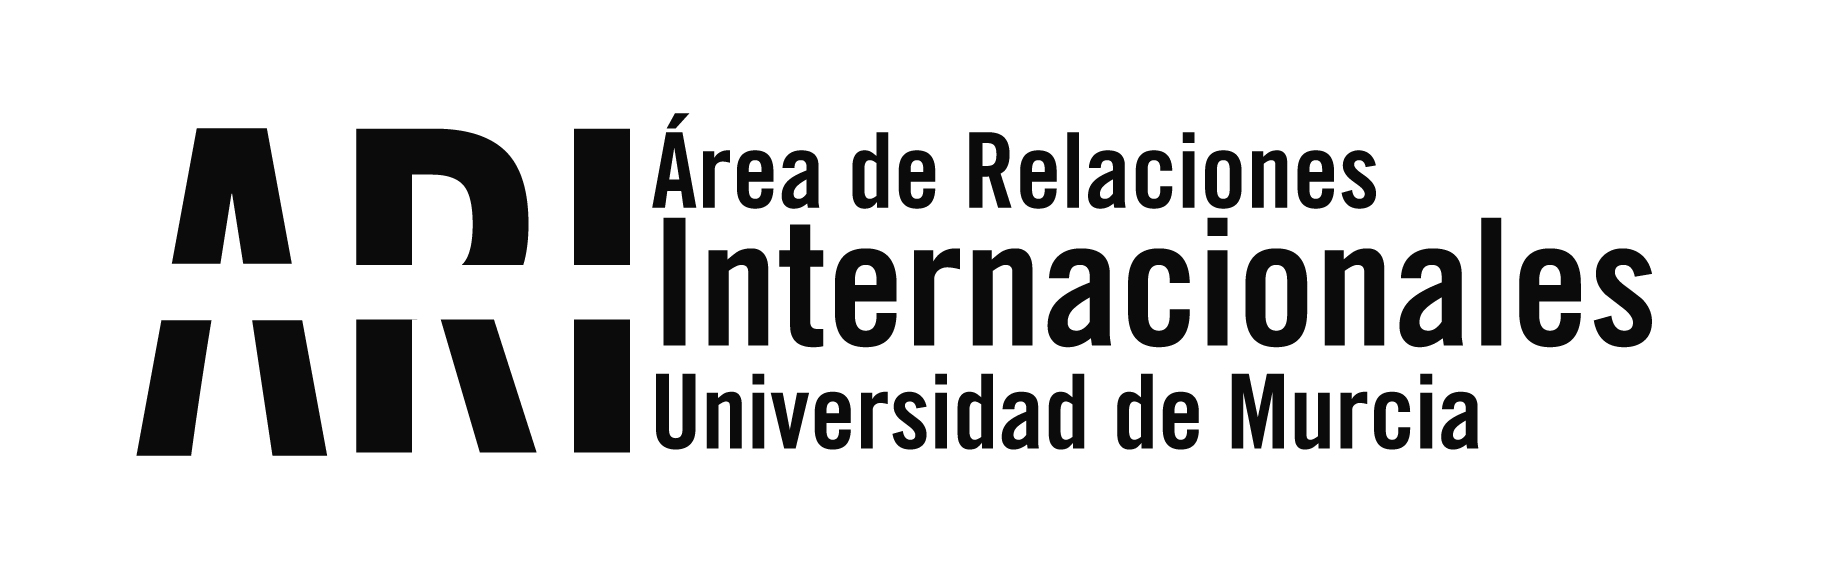 La Universidad de Murcia acoge el XII Congreso de ACLES - La Universidad de Murcia acoge el XII Congreso de ACLES - Área de Relaciones Internacionales